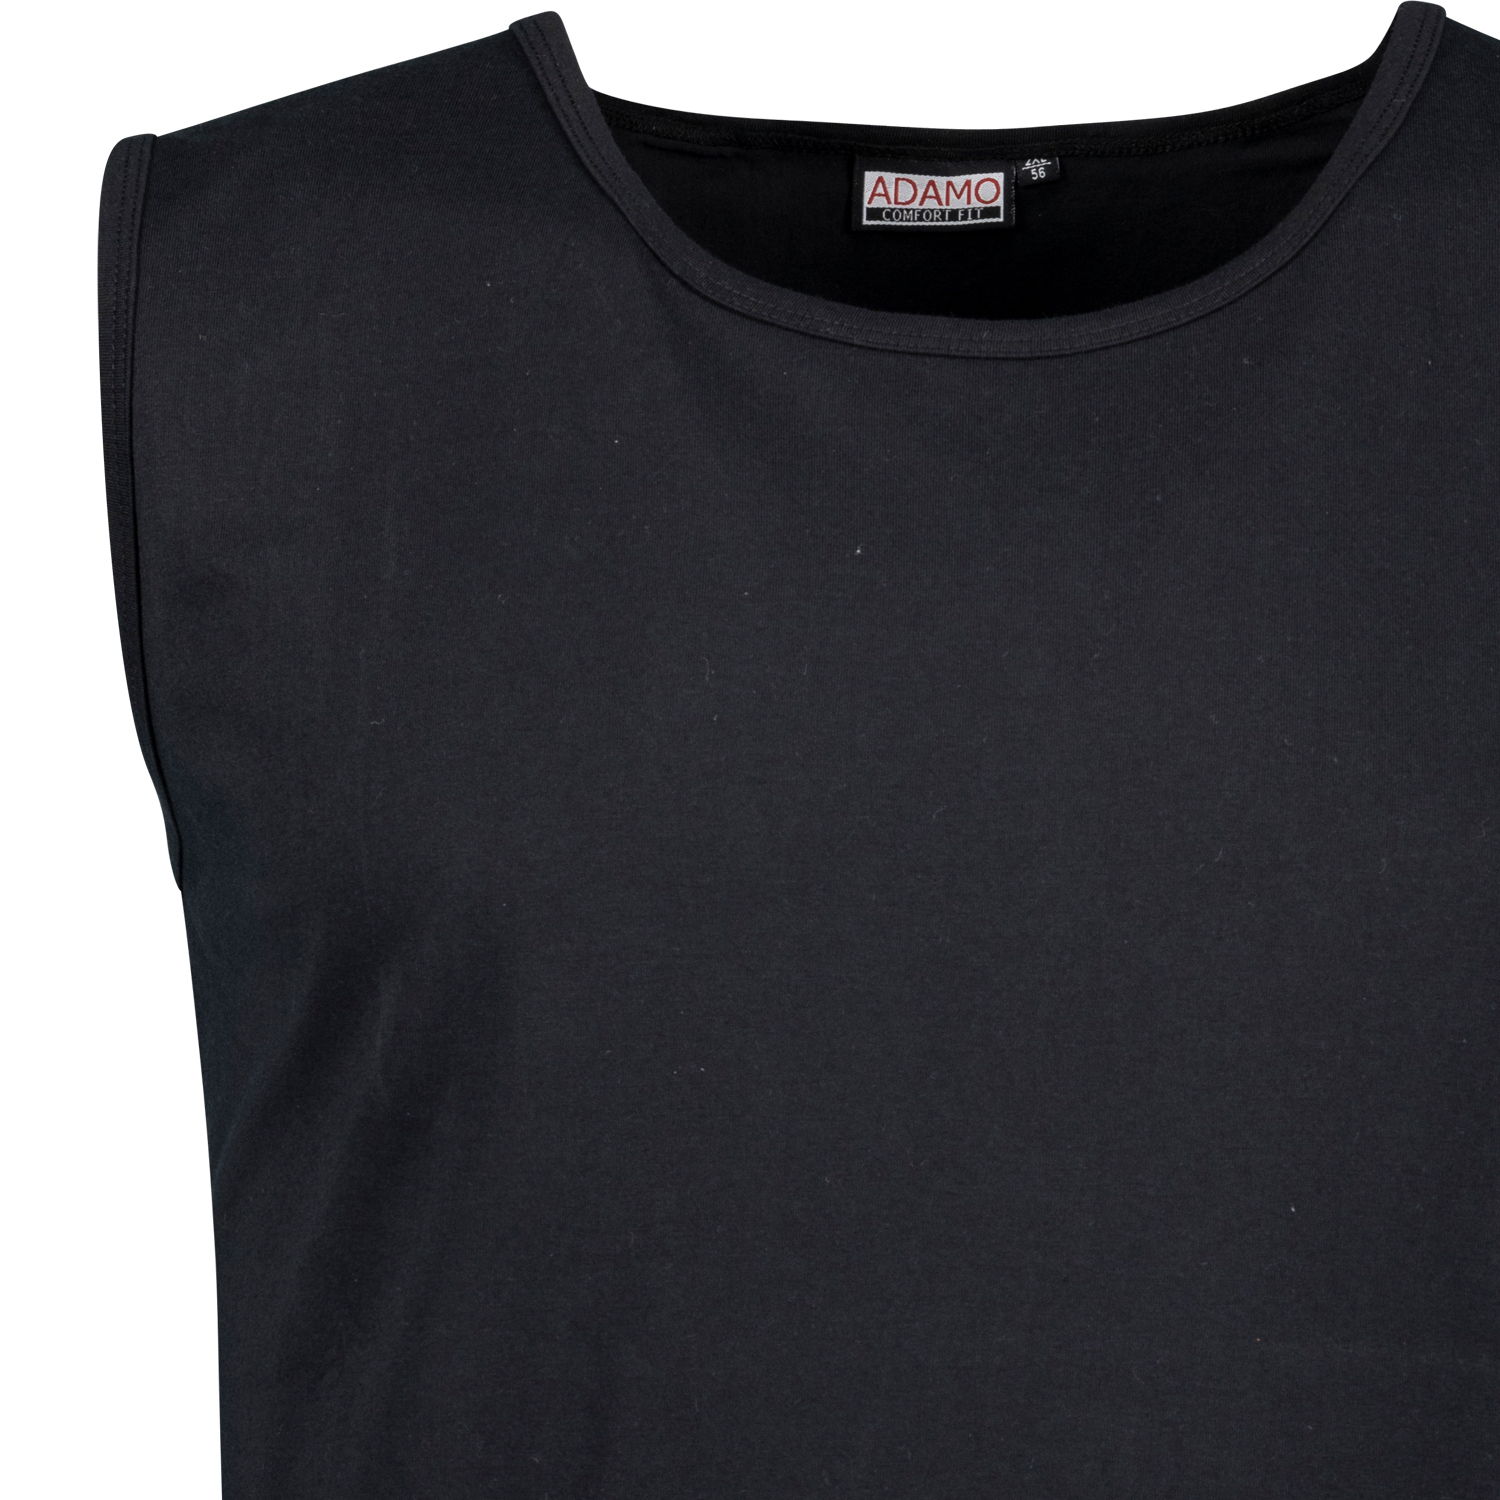 Schwarzes City-Shirt ROD COMFORT FIT der Marke ADAMO in großen Größen bis 12XL